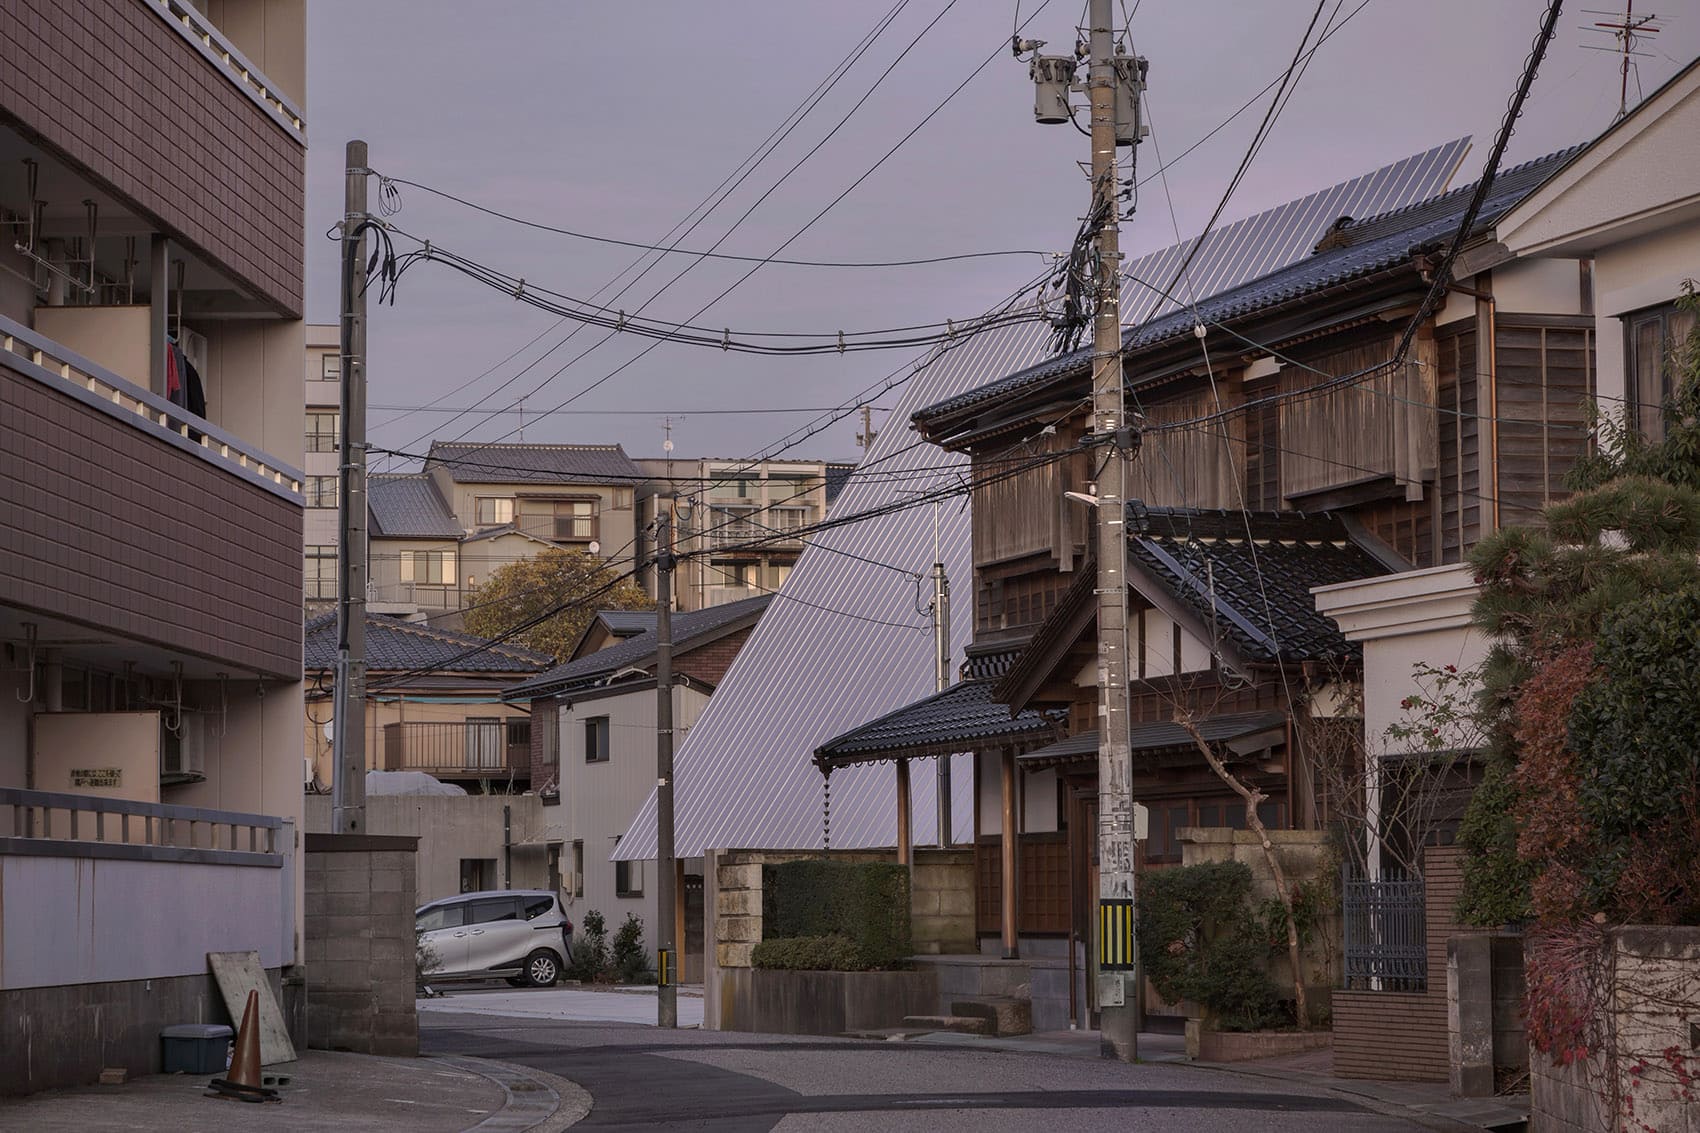 008 house in kanazawa by shota nakanishi architects ohno japan fdca7